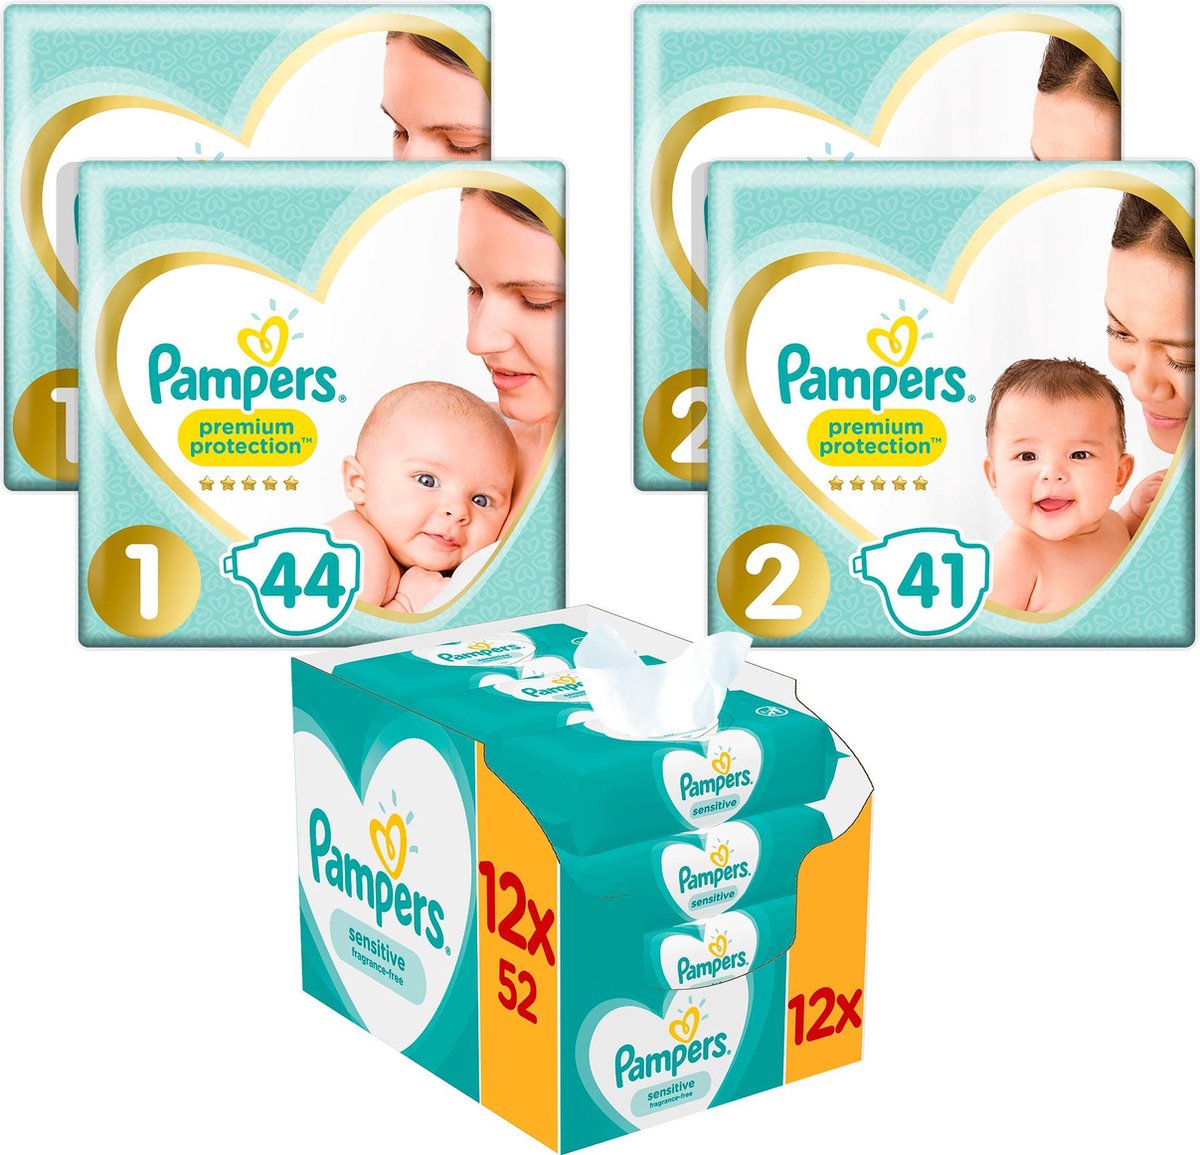 Pampers Premium Protection Startpakket – 88 luiers Maat 1 (2-5kg), 82 luiers Maat 2 (4-8kg) + 12pak Sensitive billendoekjes - Pampers